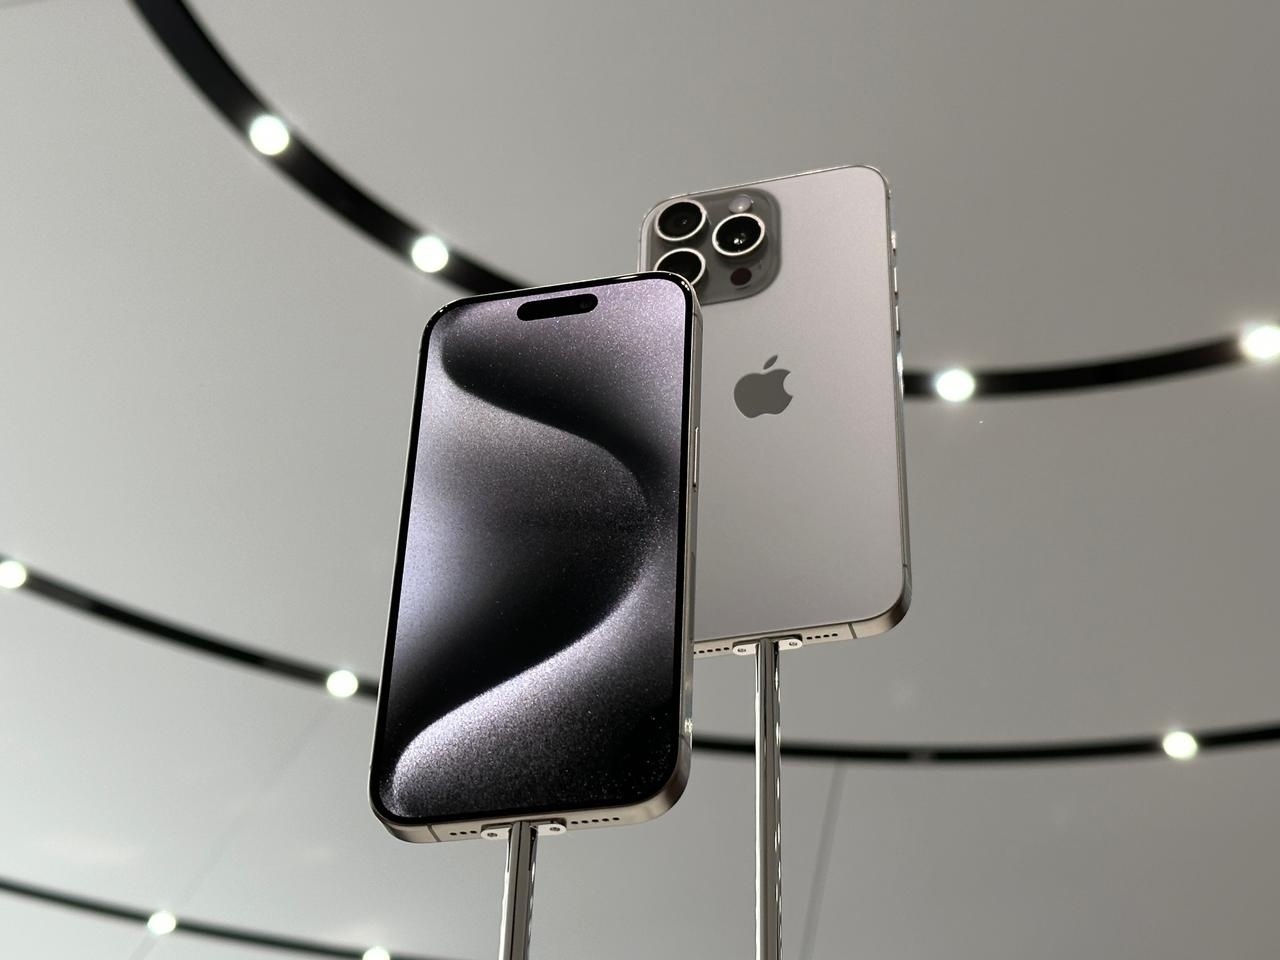 Próximo modelo acessível da Apple promete avanço significativo em relação à geração anterior,O iPhone SE 4 promete transformações significa...